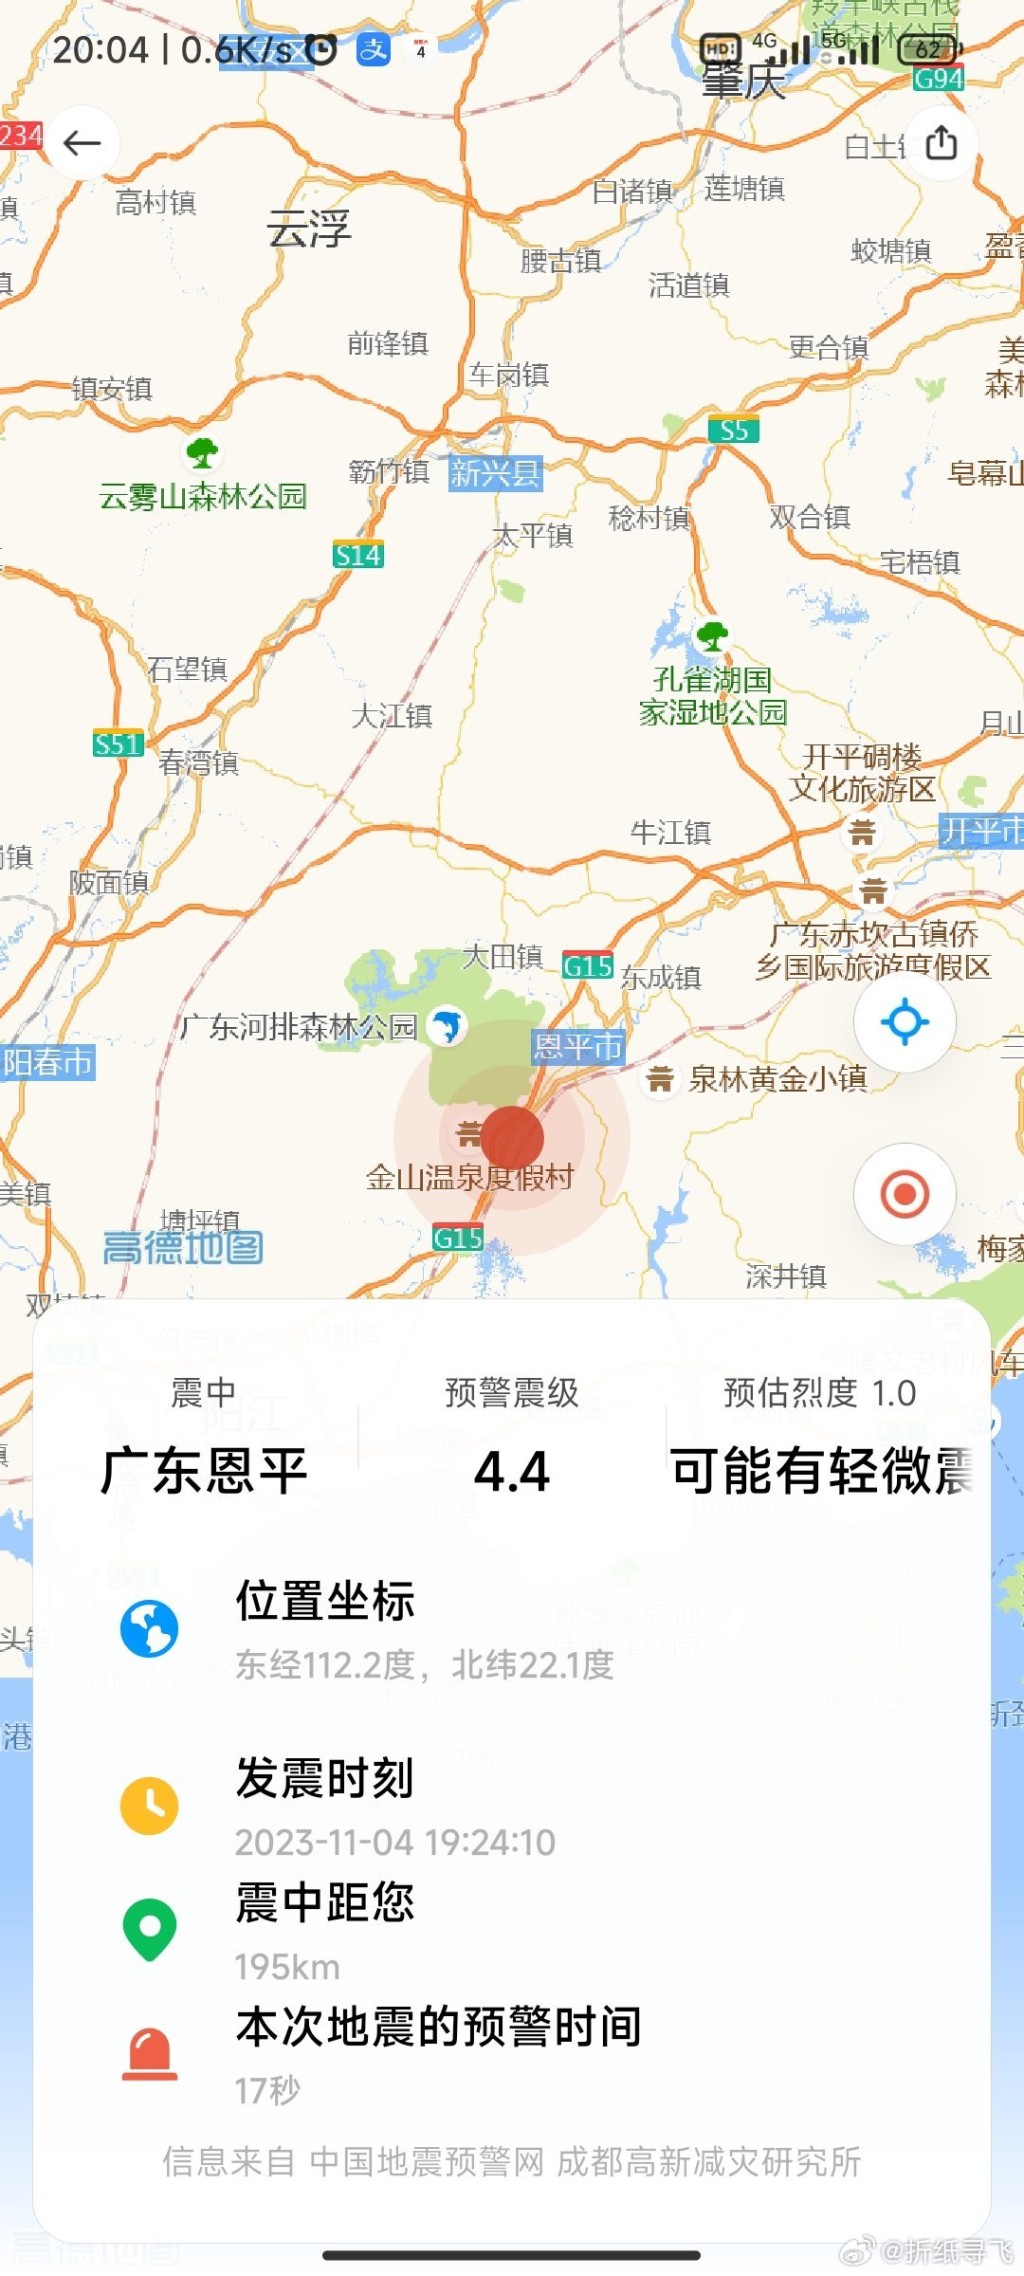 地圖上顯示的地震位置。